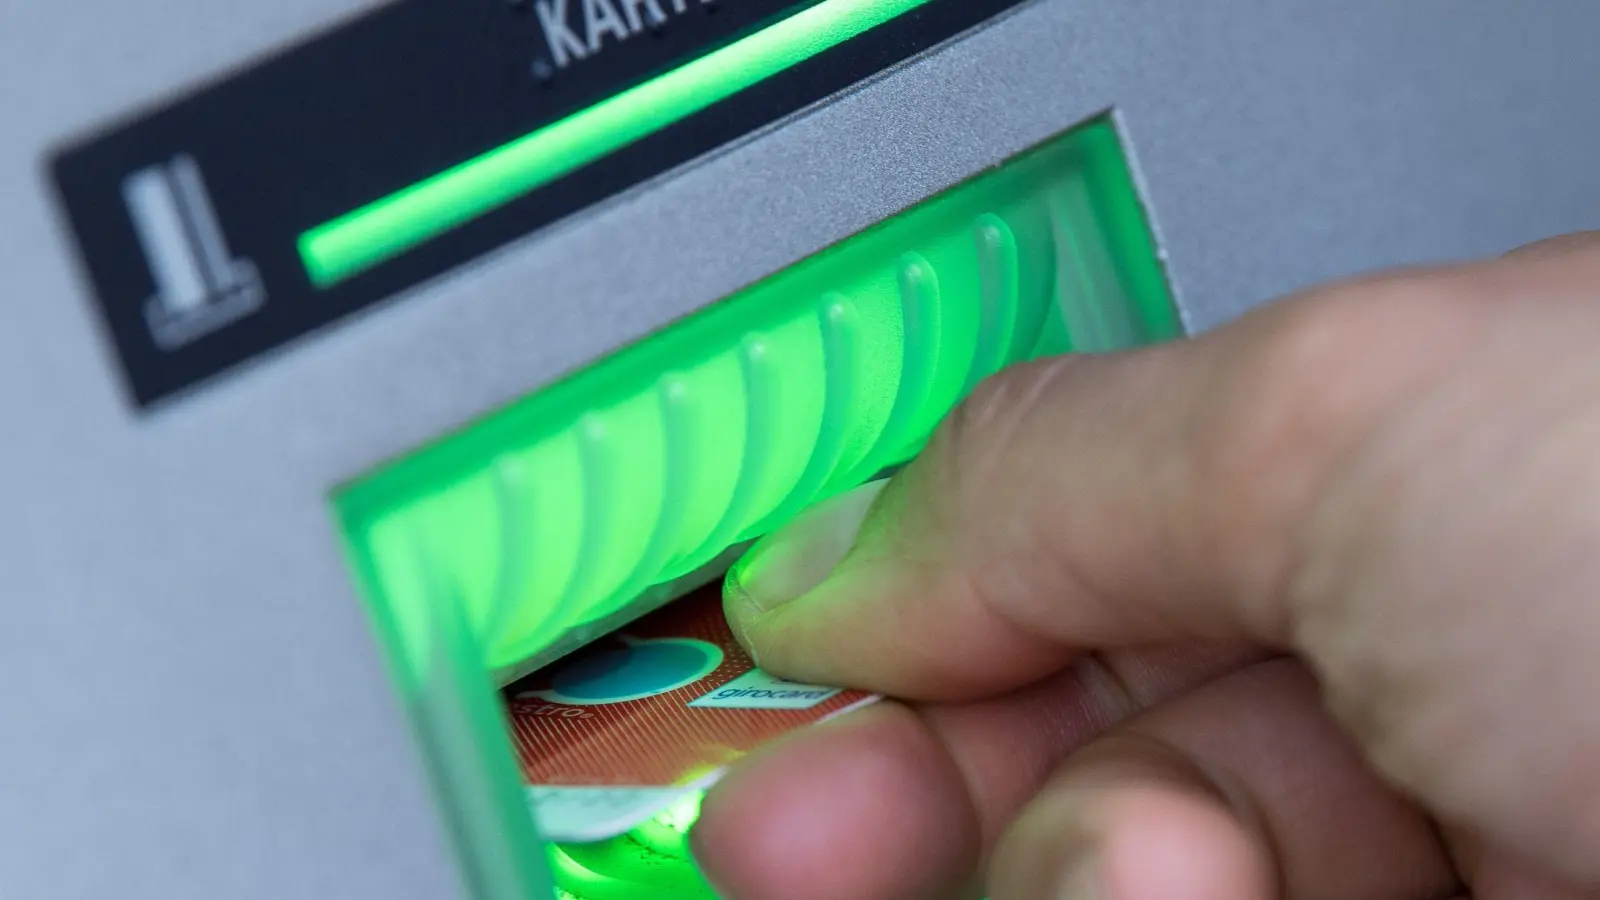 Statt Geld abzuheben, hat der Mann seine Wut an dem Bankautomaten ausgelassen. (Foto: Fabian Sommer/dpa)